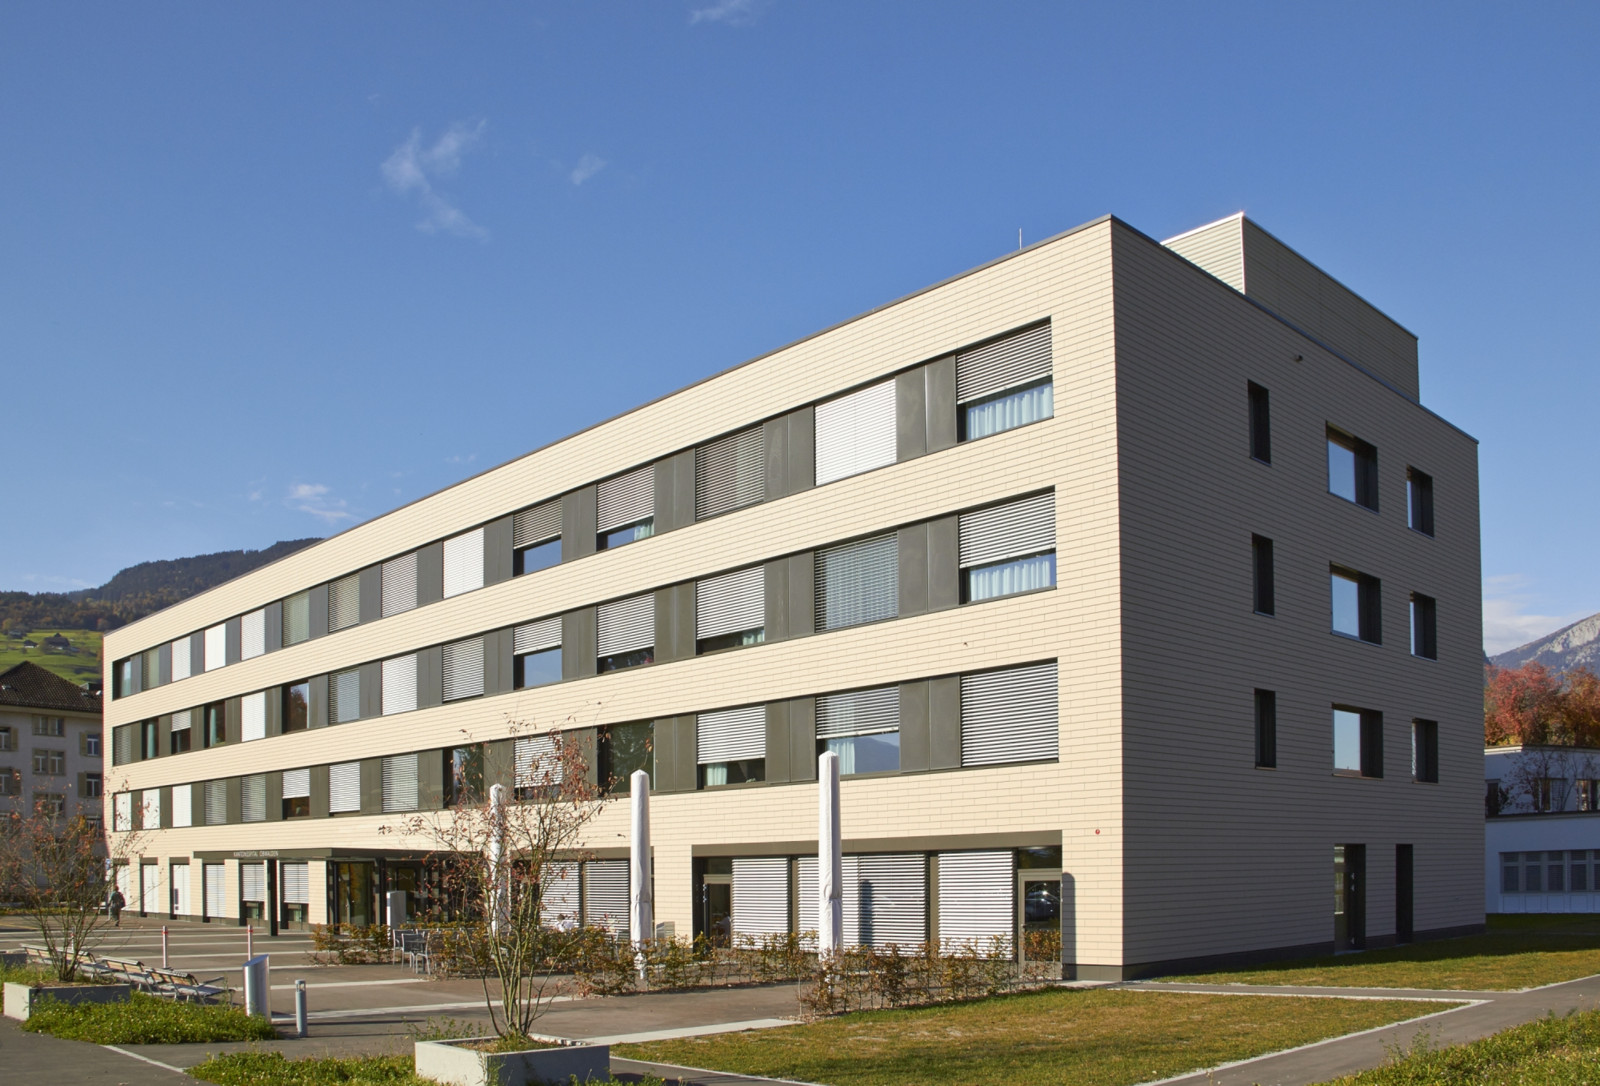 Außenansicht des Neubaus für den Pflegebereich im Kantonsspitals Obwalden in der Schweiz.
